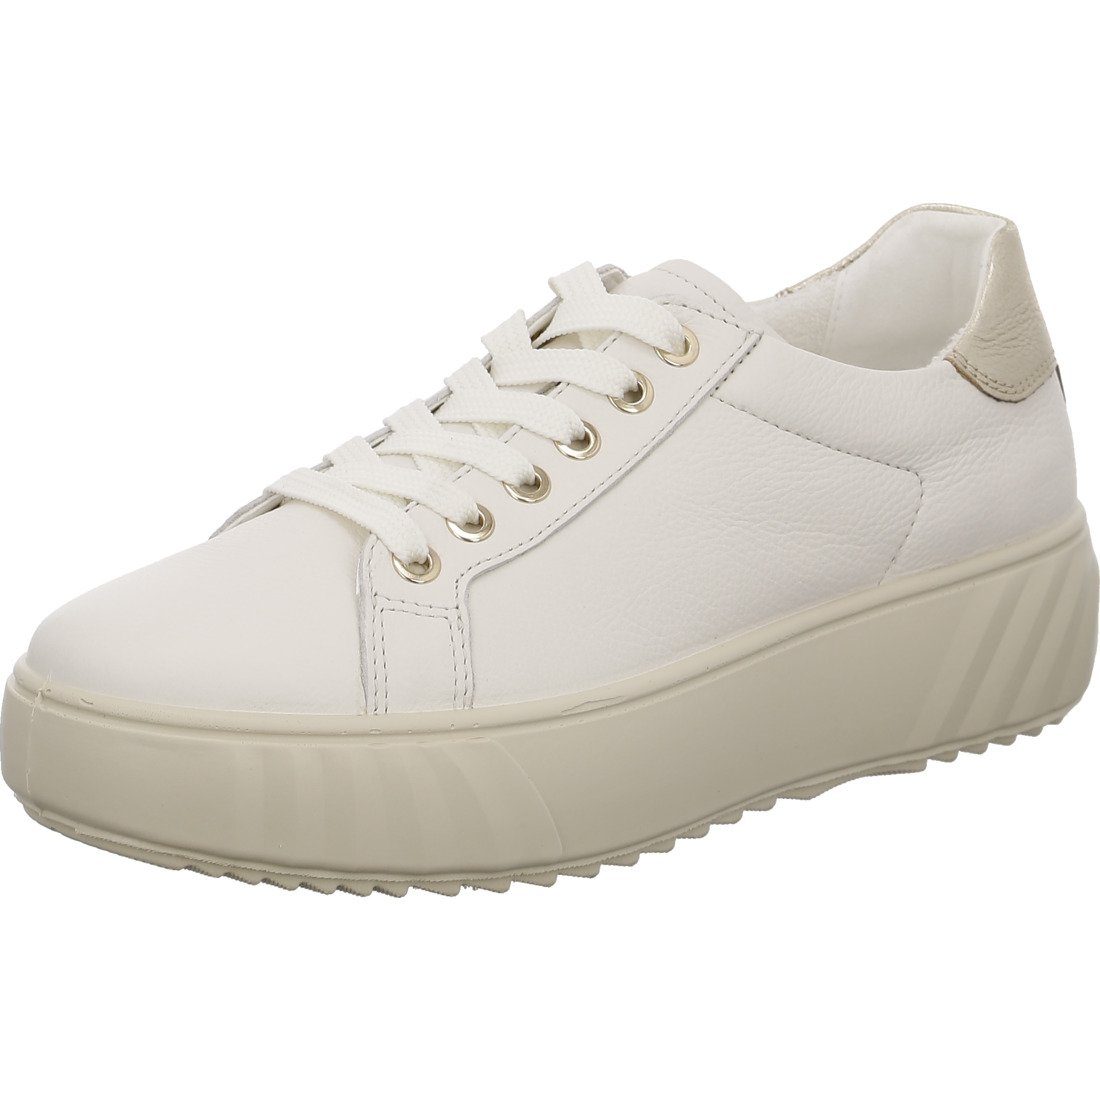 Ara Ara Schuhe, Sneaker Monaco - Leder Damen Sneaker offwhite 050821